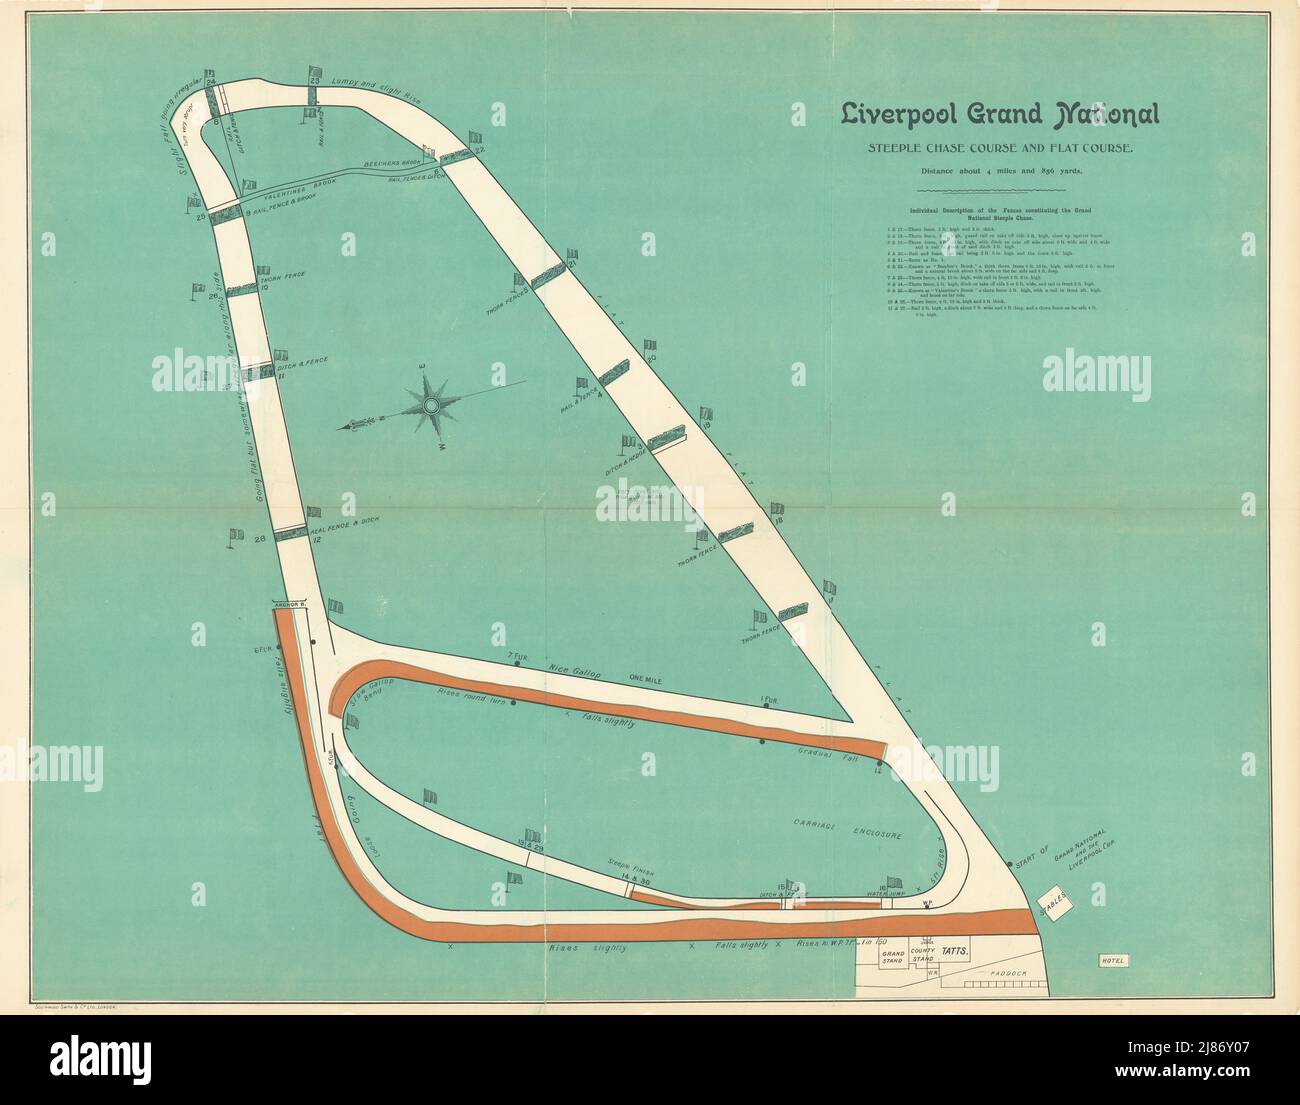 Aintree-Hindernislauf und flache Rennbahn Liverpool Grand National. BAYLES 1903 Karte Stockfoto